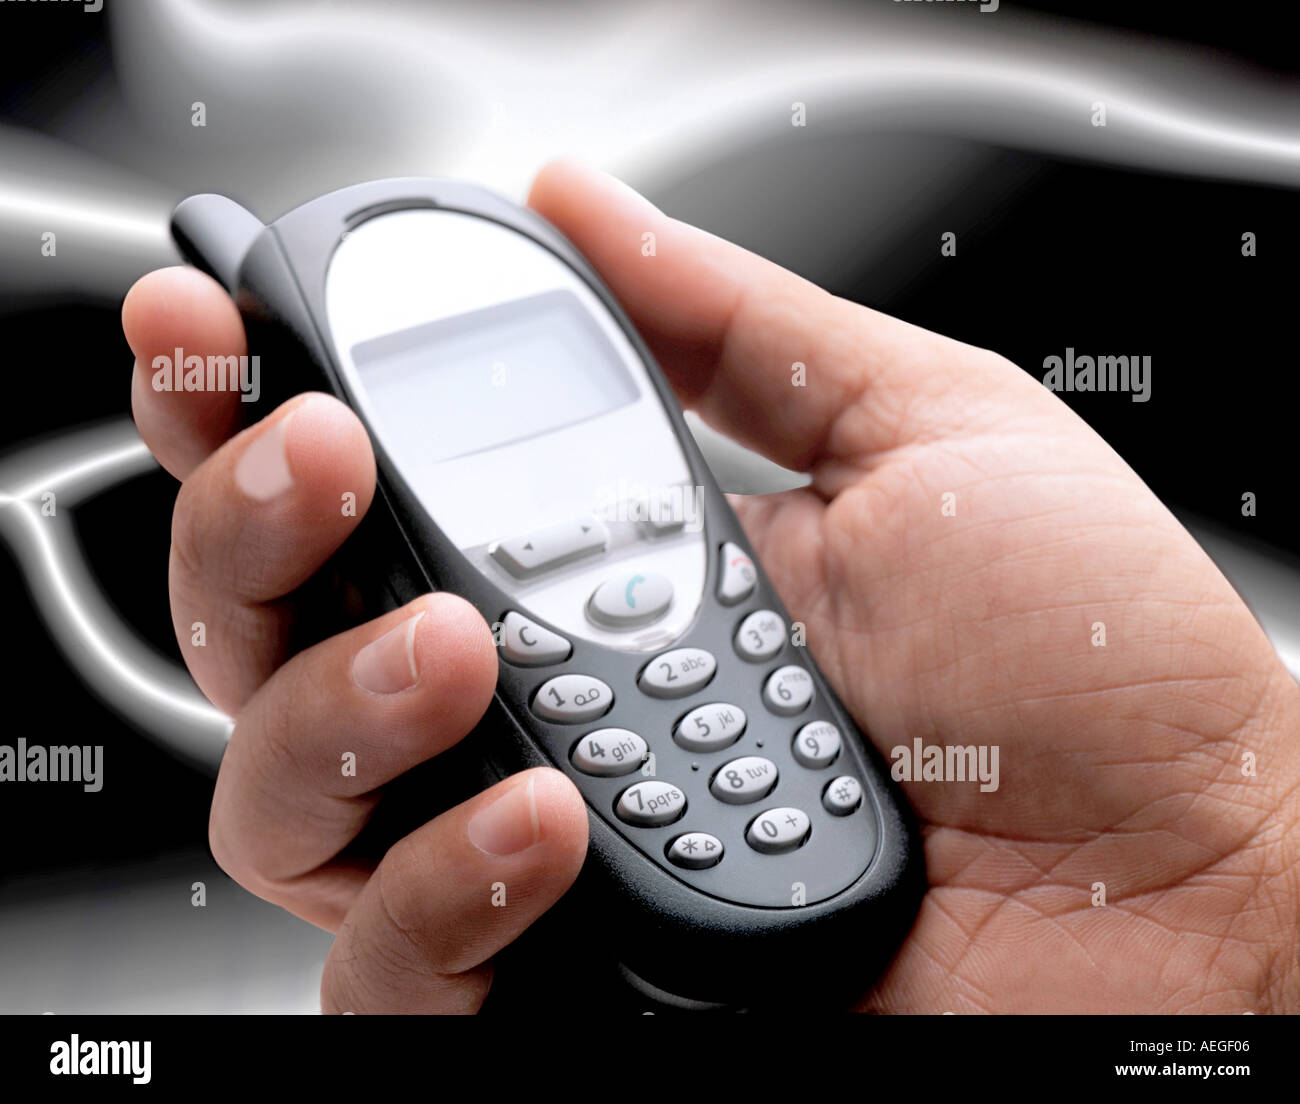 Büro Handy Mobile Mobiltelefon handlich halten Hand Tastatur Tasten Telefon konzeptionelle Kommunikation Technologienetzwerk Stockfoto